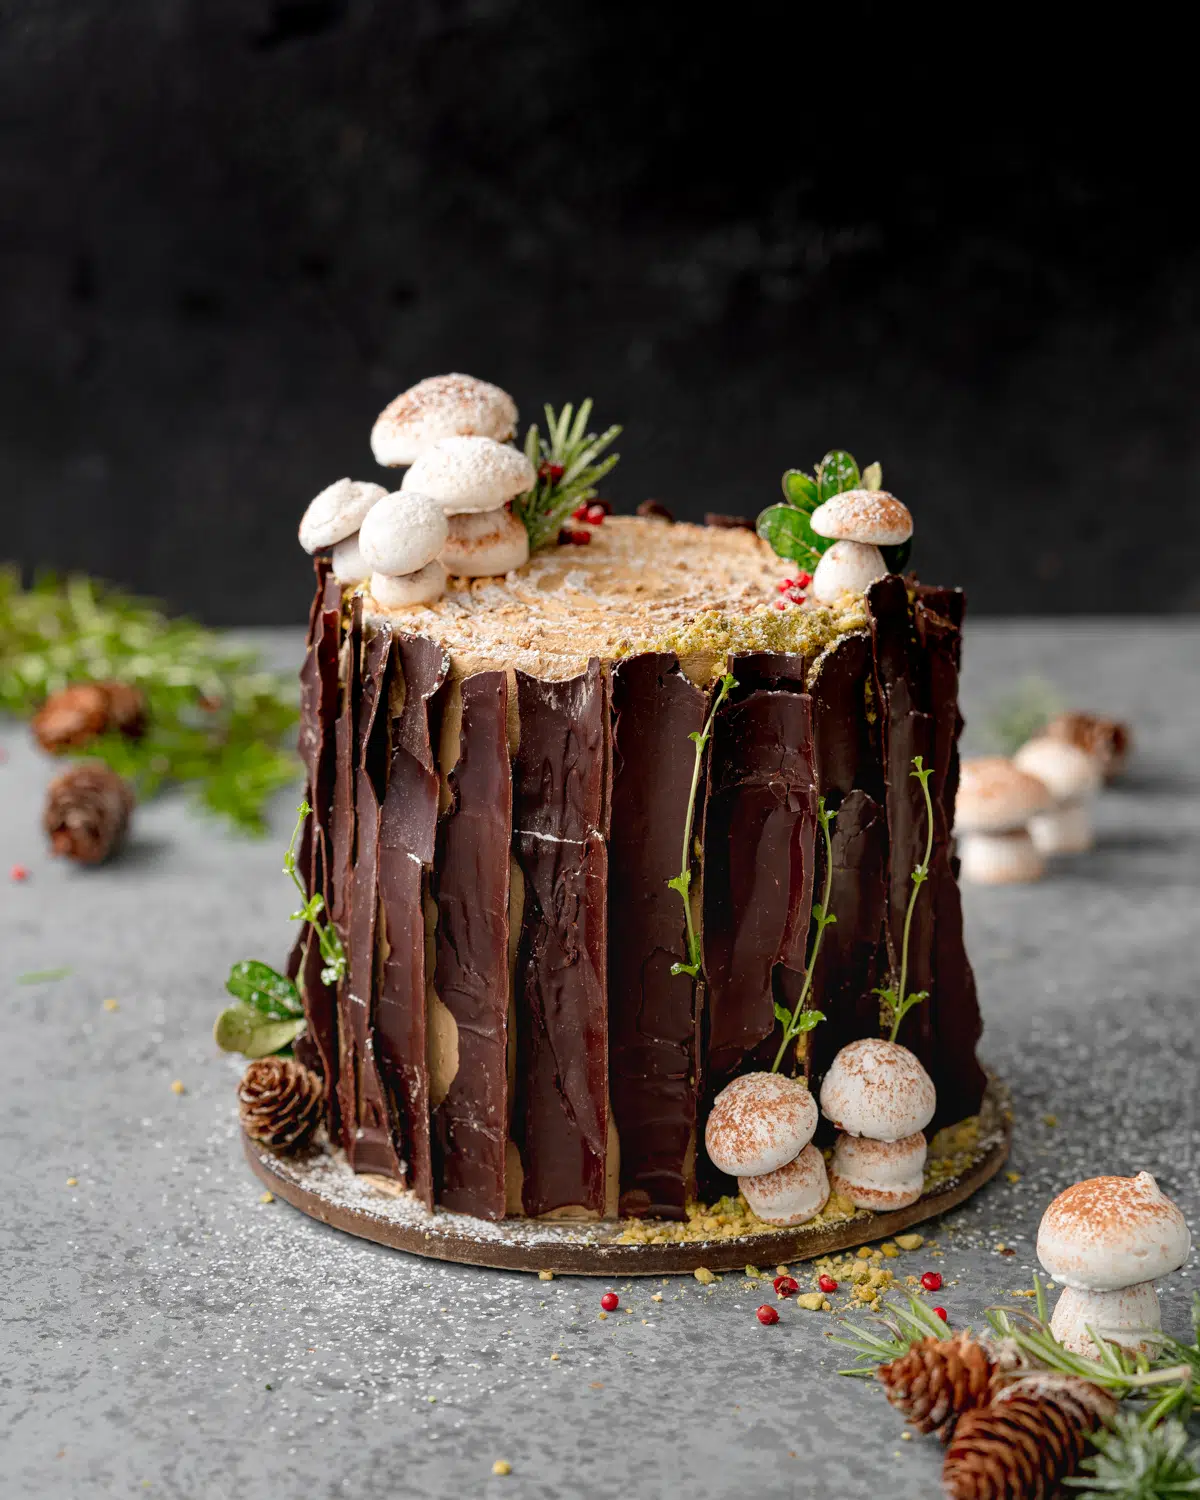 woodland tree stump cake with meringue mushrooms.